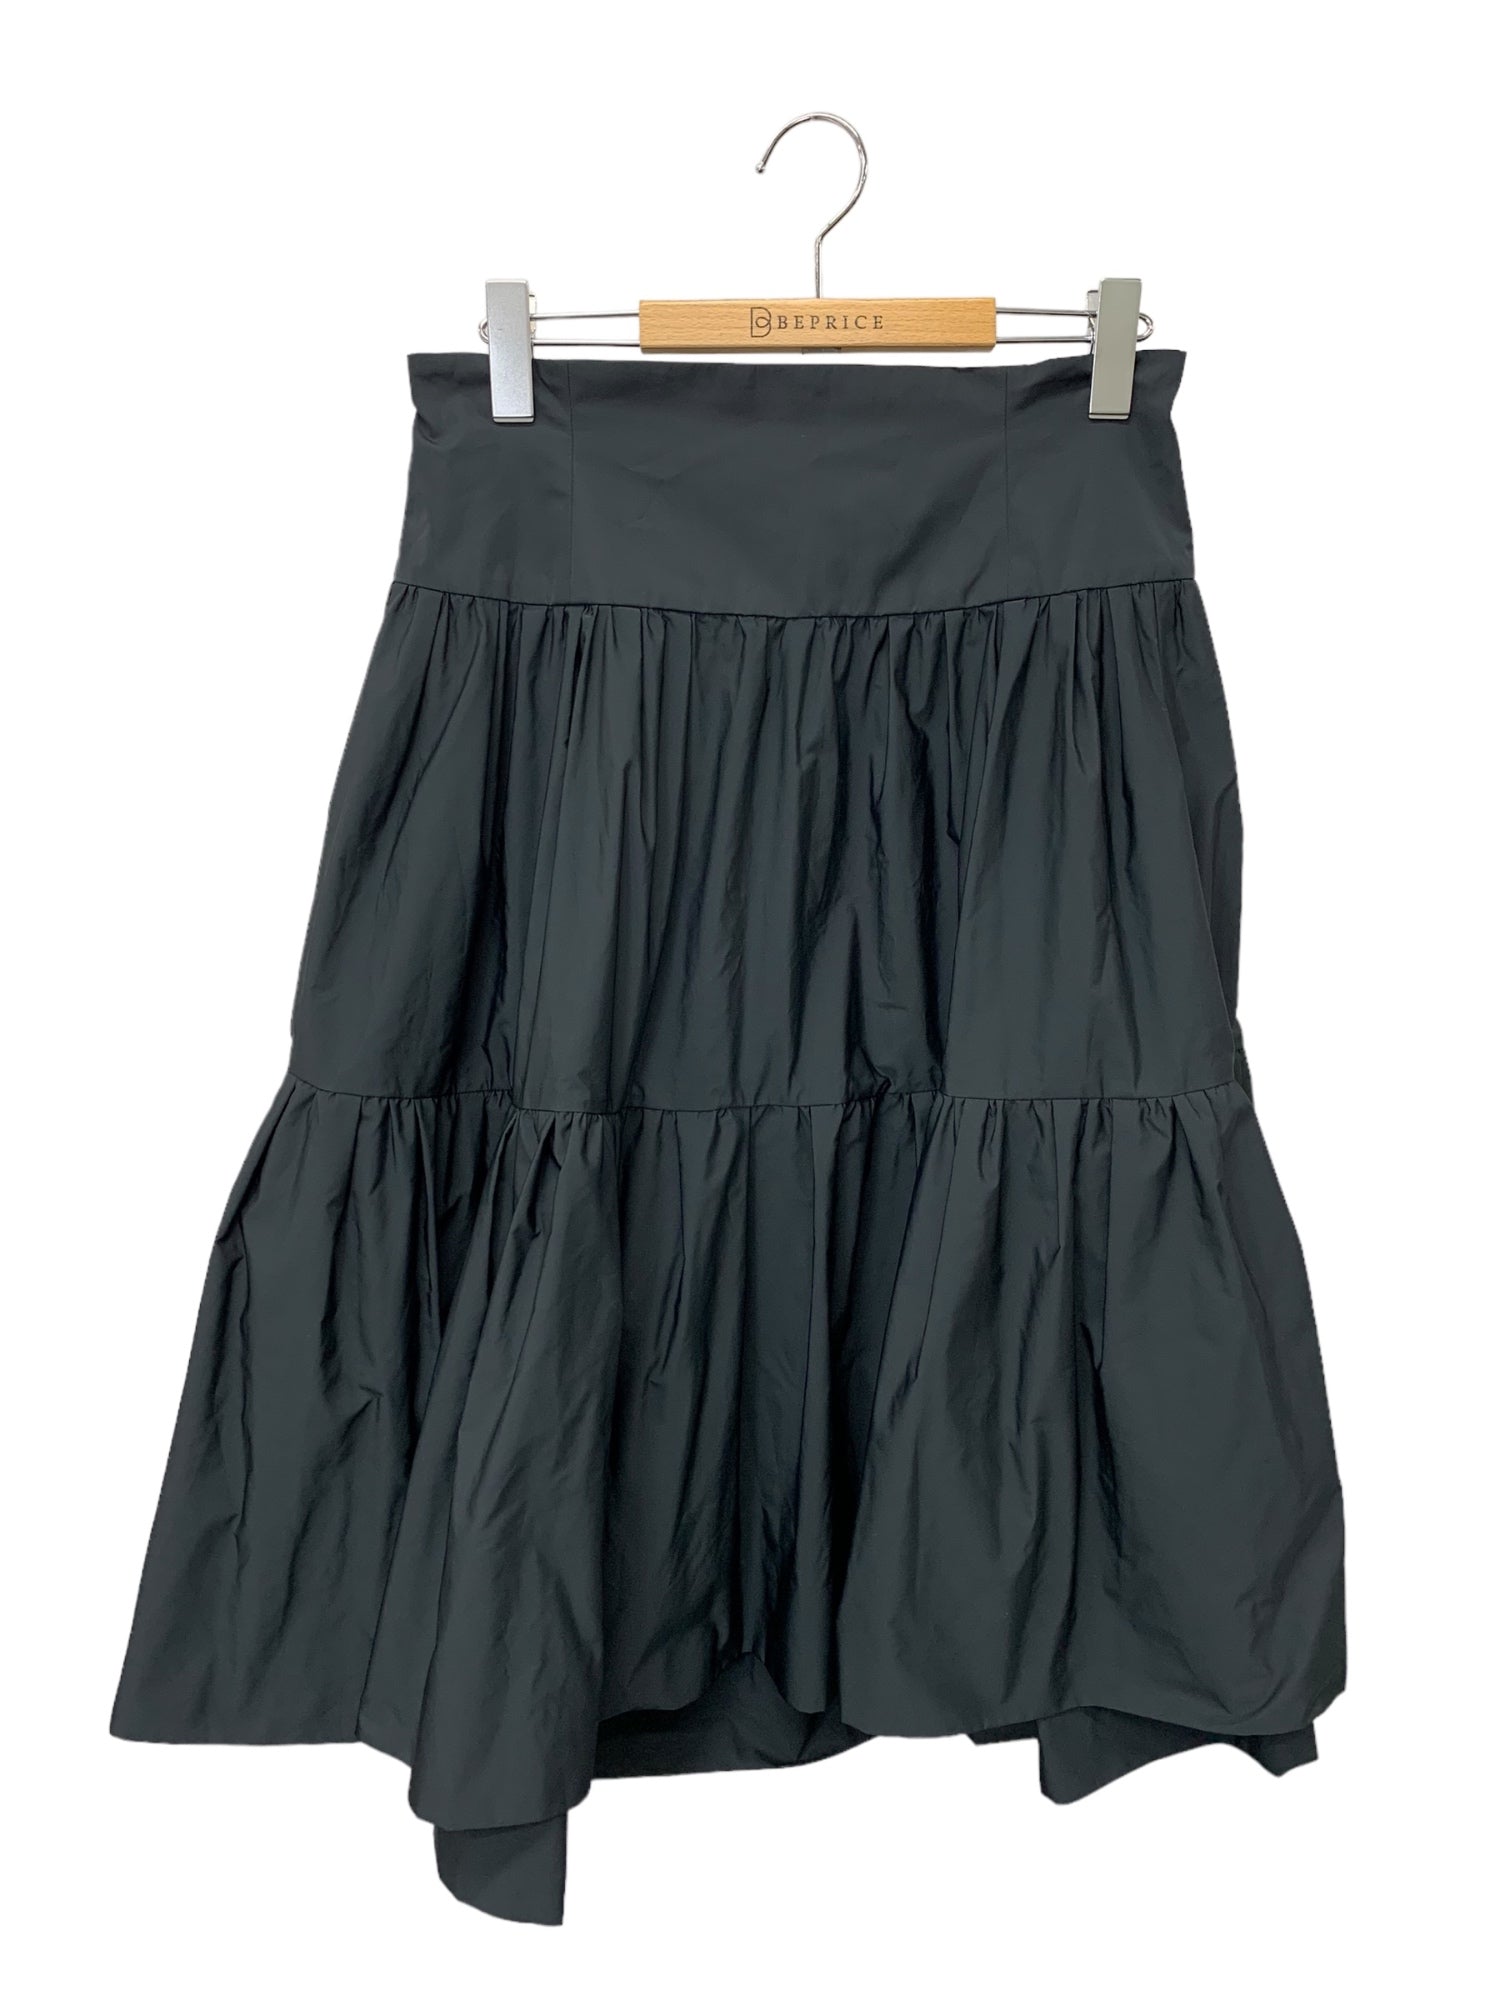 通販再入荷デイジーリン スカート Tuxedo Skirt 42 Mサイズ